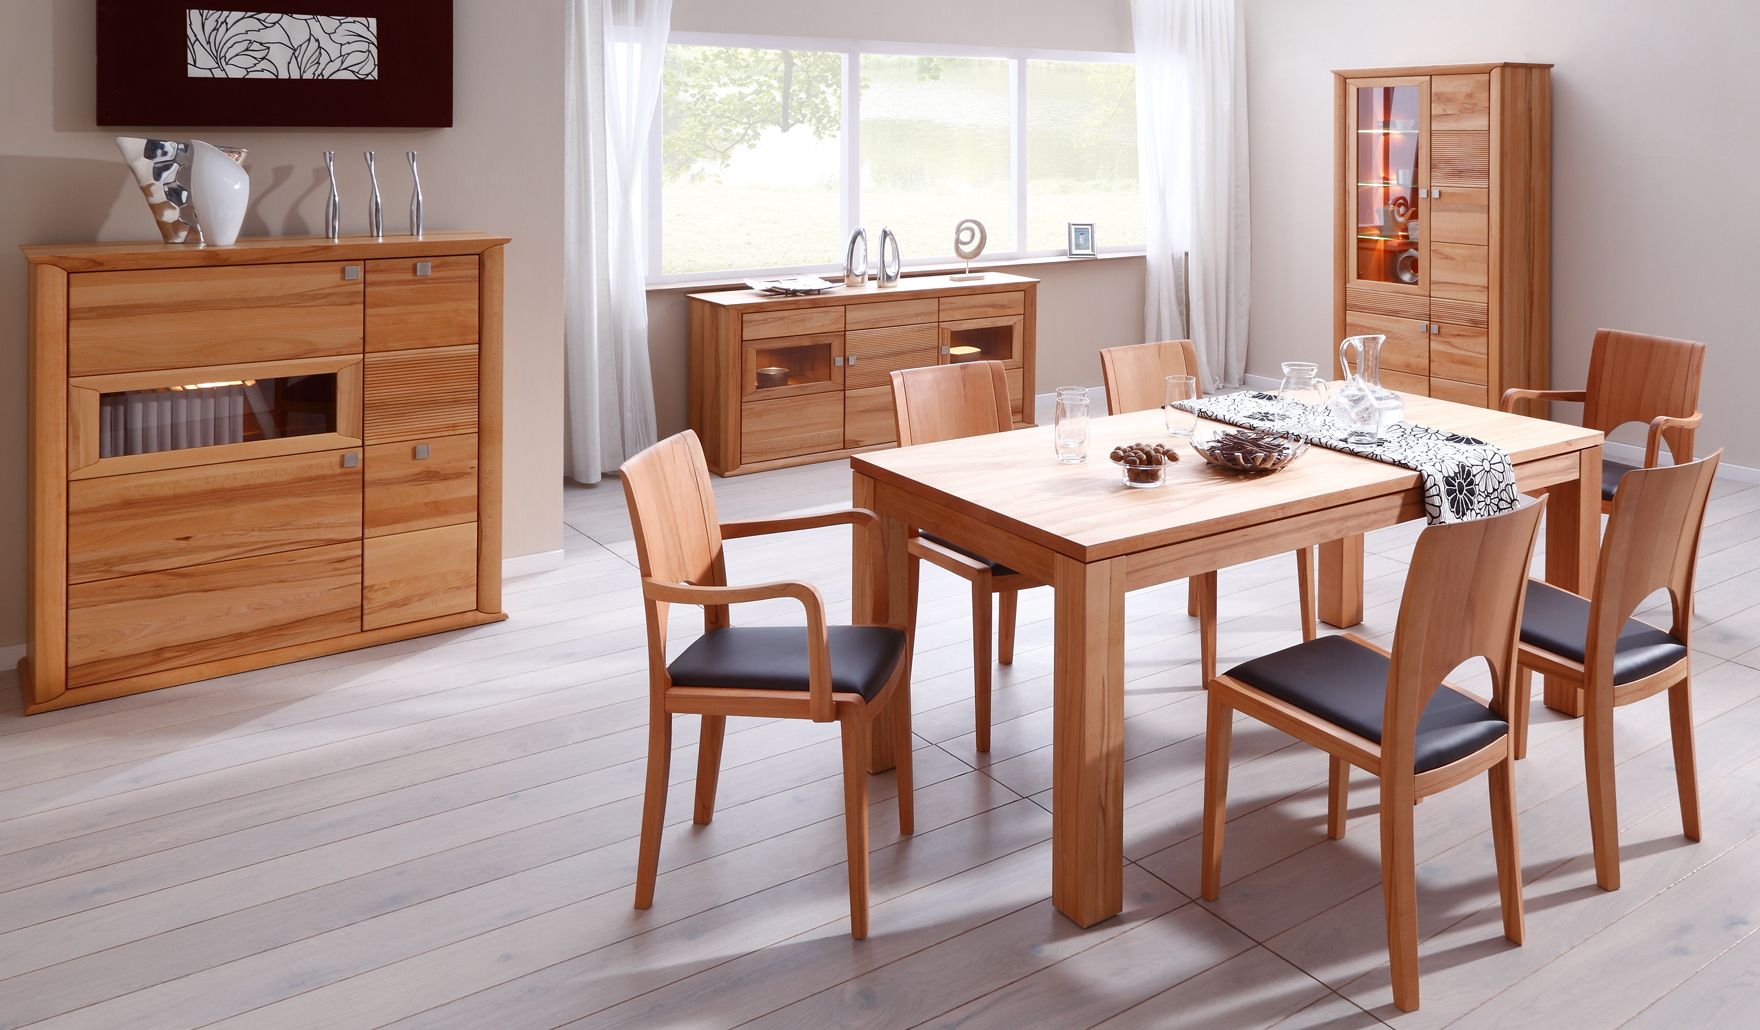 Buchholz kitchen kitchen planning furniture wooden table